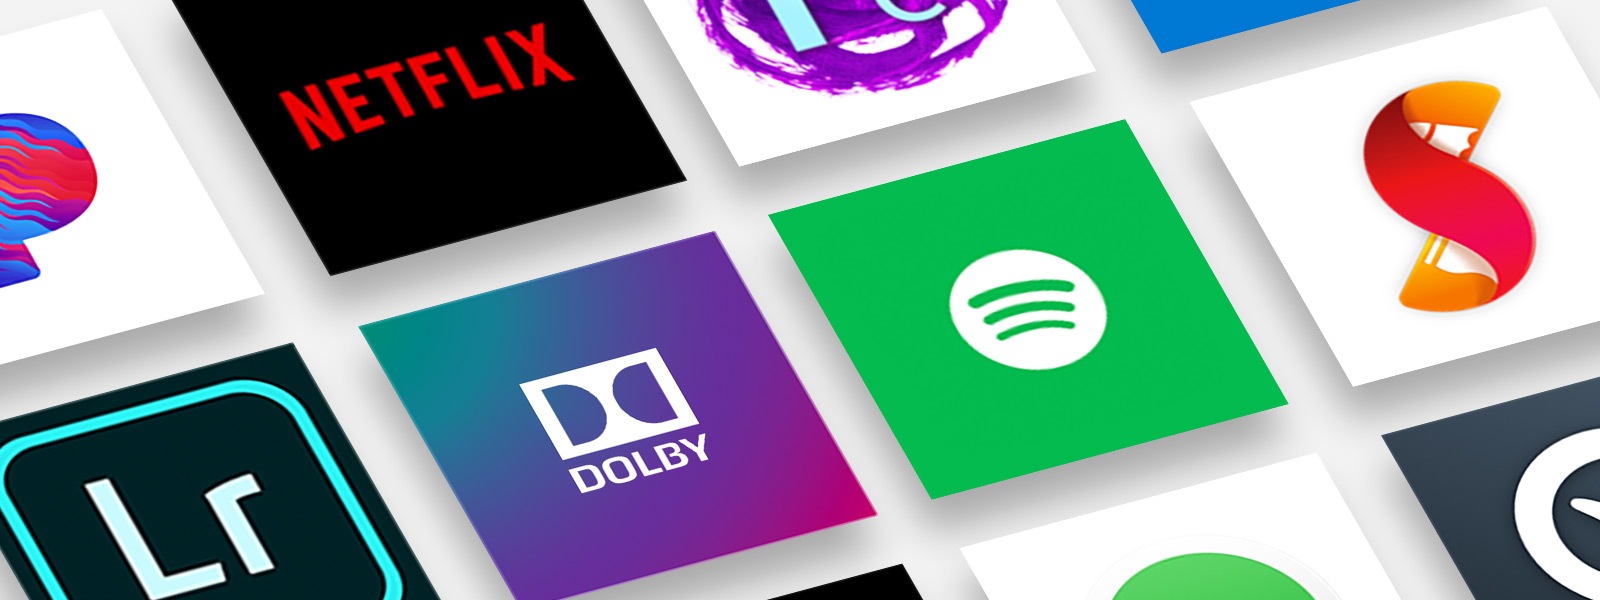 Несколько логотипов, включая Netflix, Dolby и Pandora